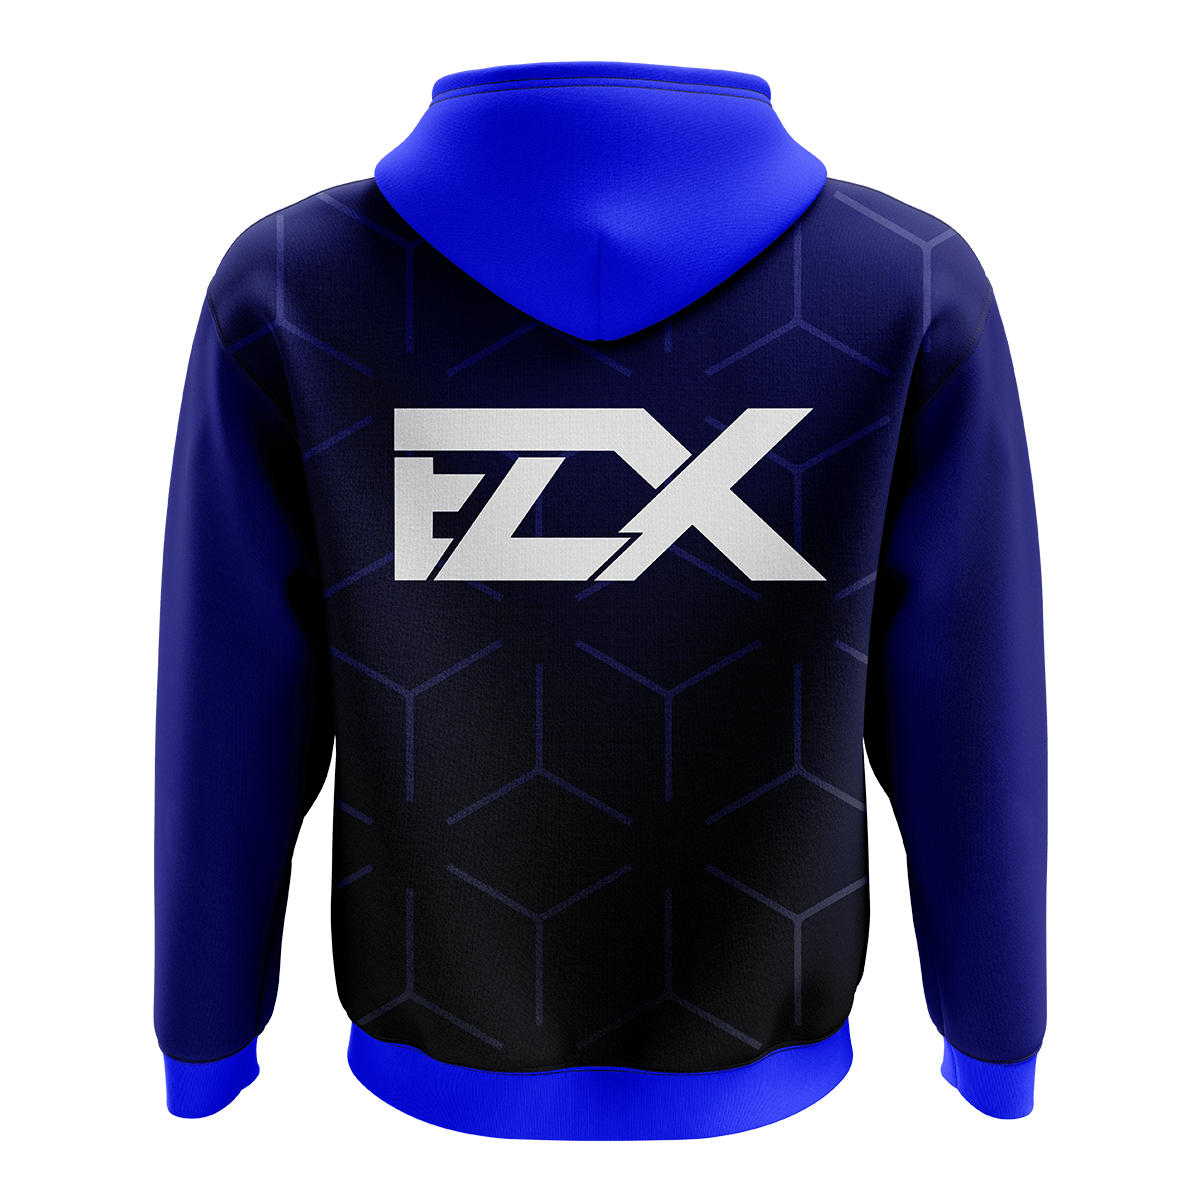 EL3KTRIXX GAMING - Crew Zipper 2020